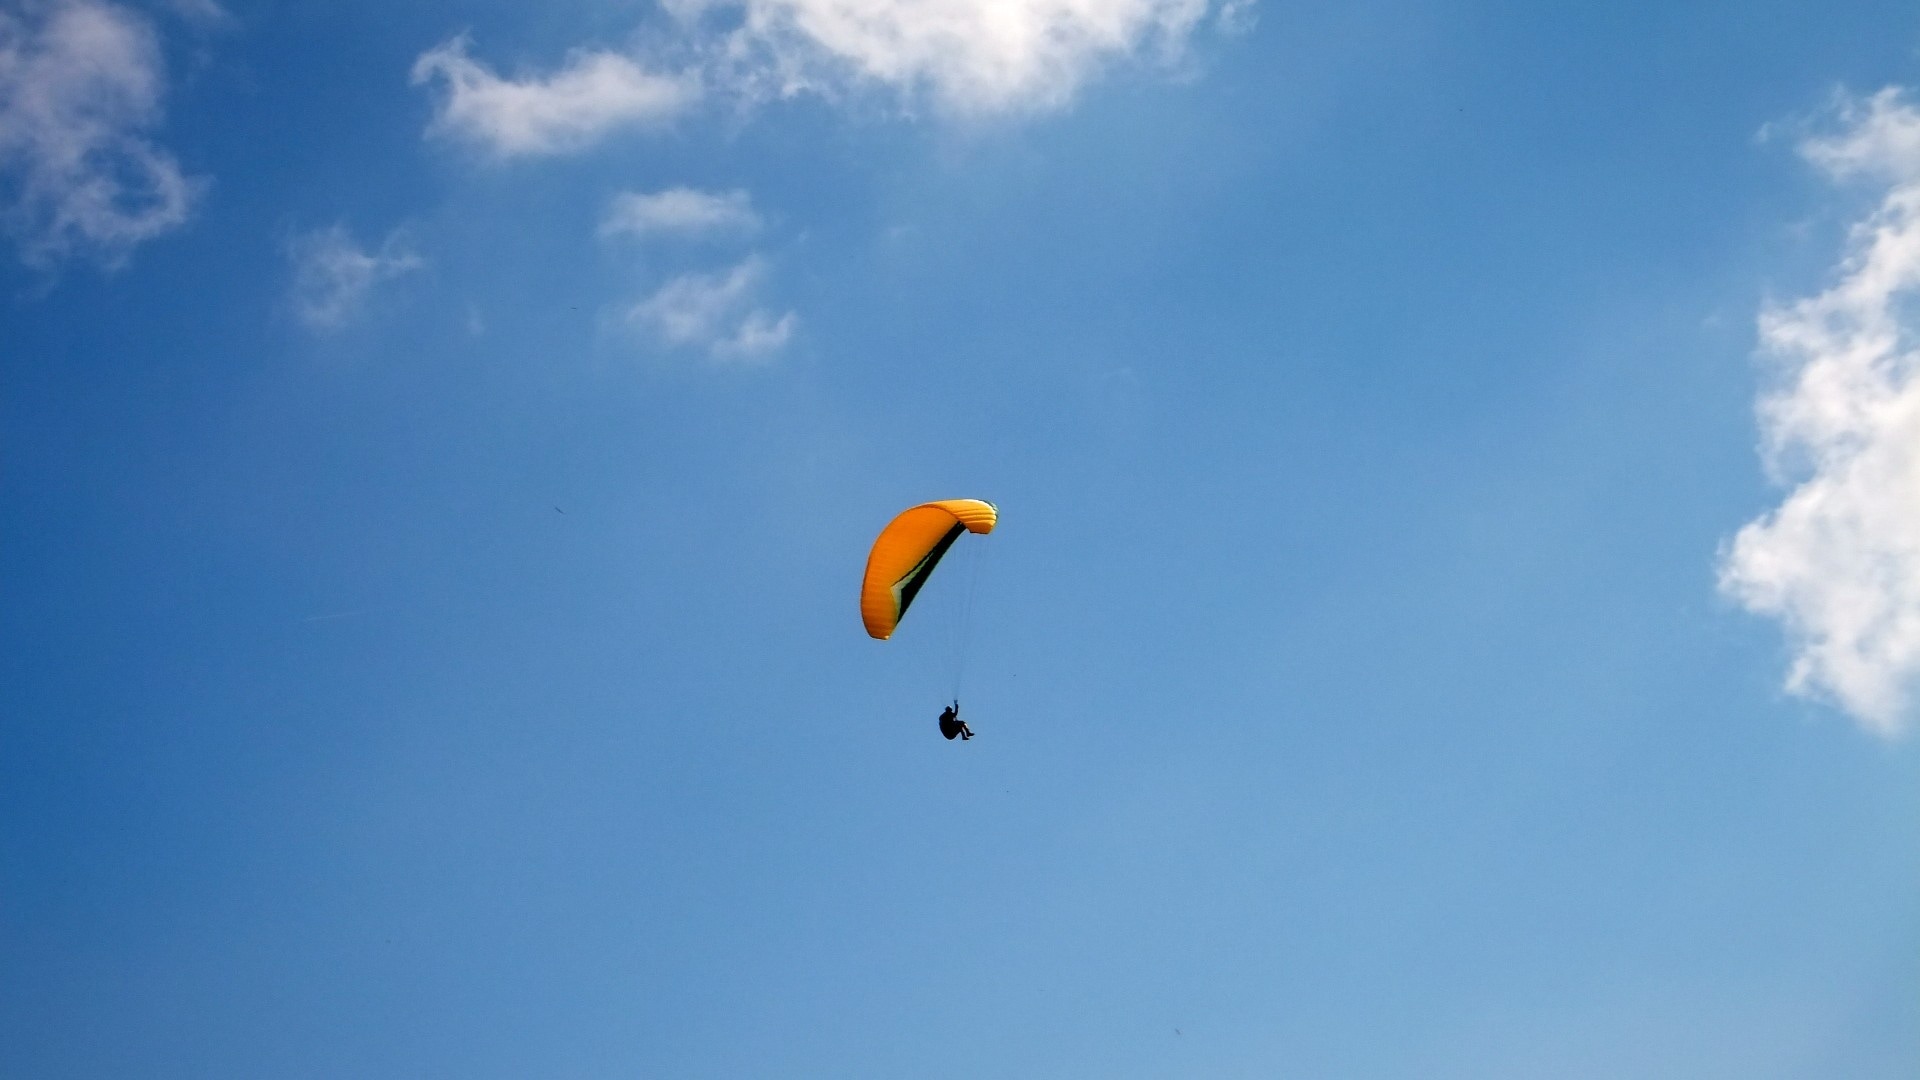 yellow glider parachute